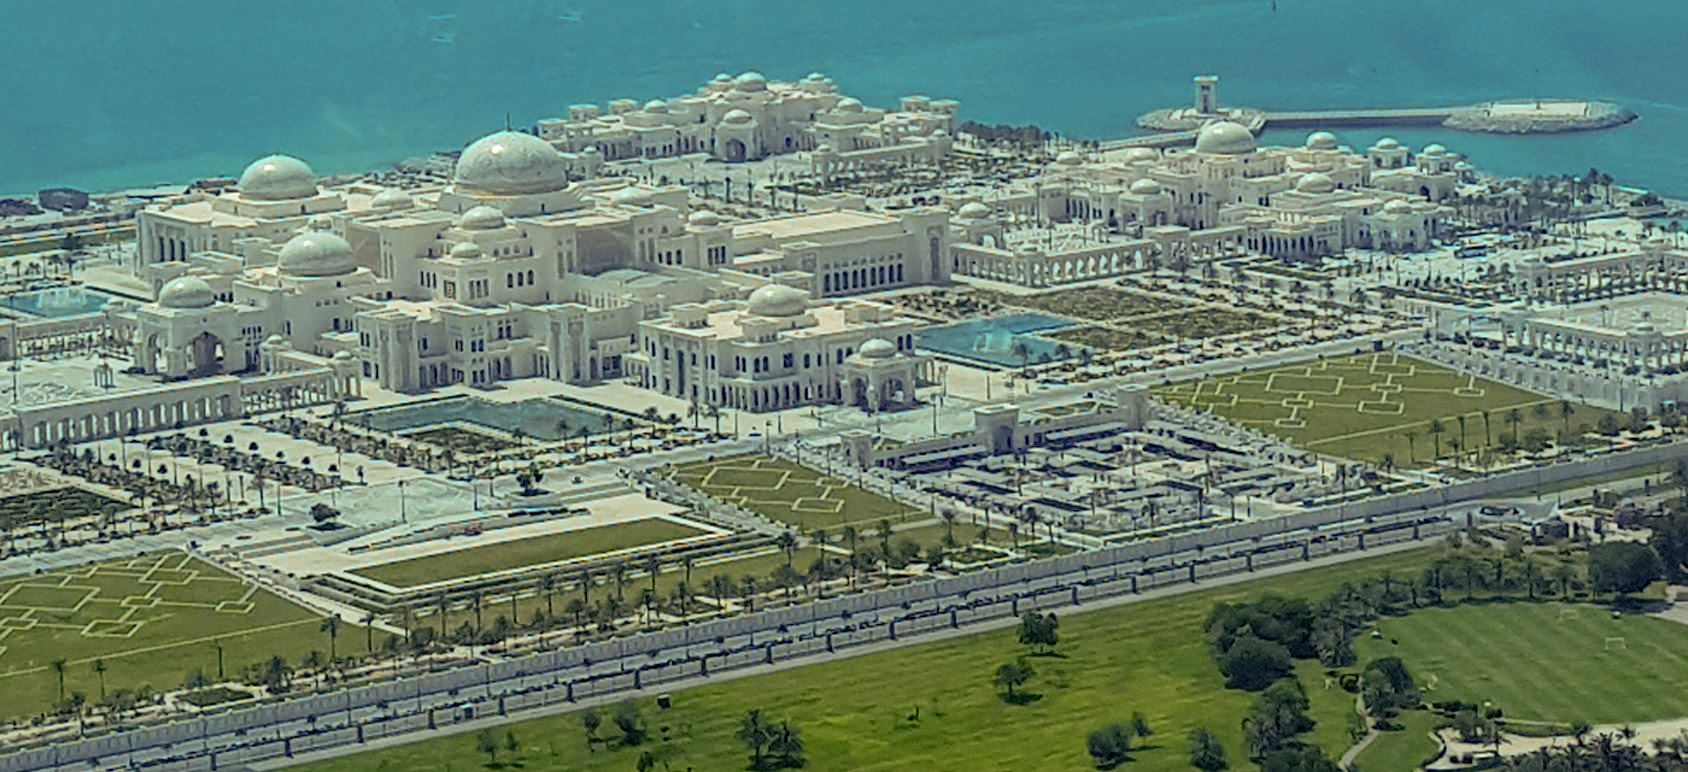 Luftaufnahme des Präsidentenpalasts von Abu Dhabi